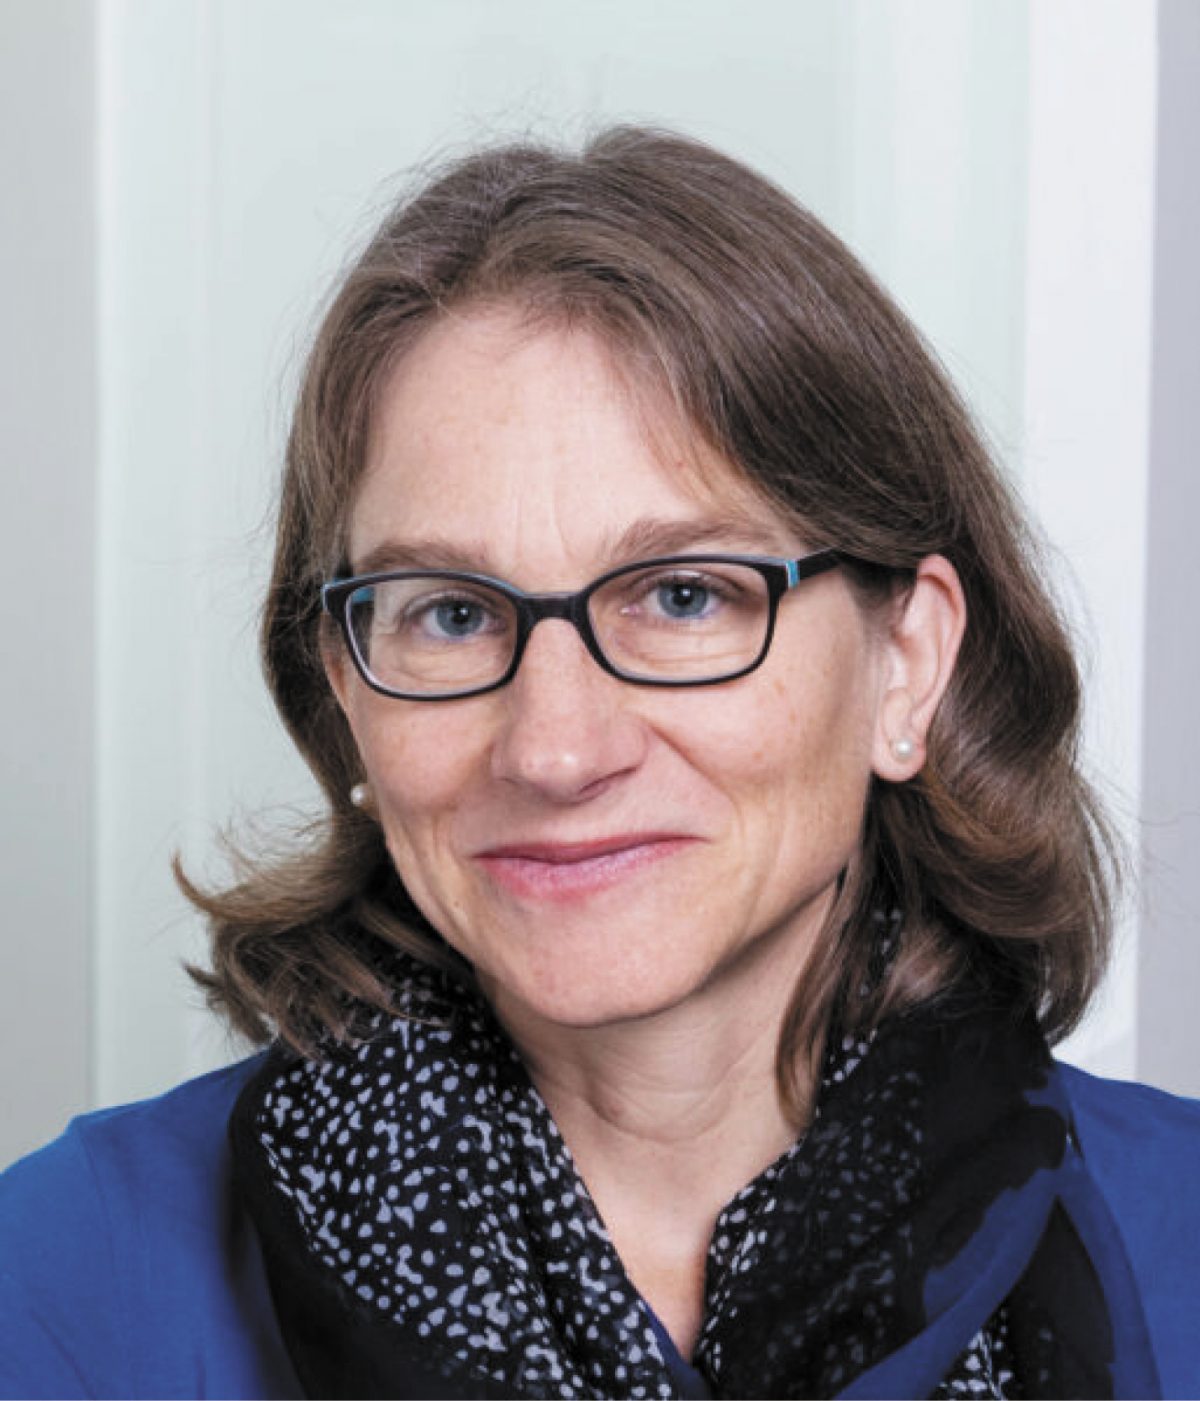 Lena Serck-Hanssen | ETH Zurich Foundation, Information for ETH professors